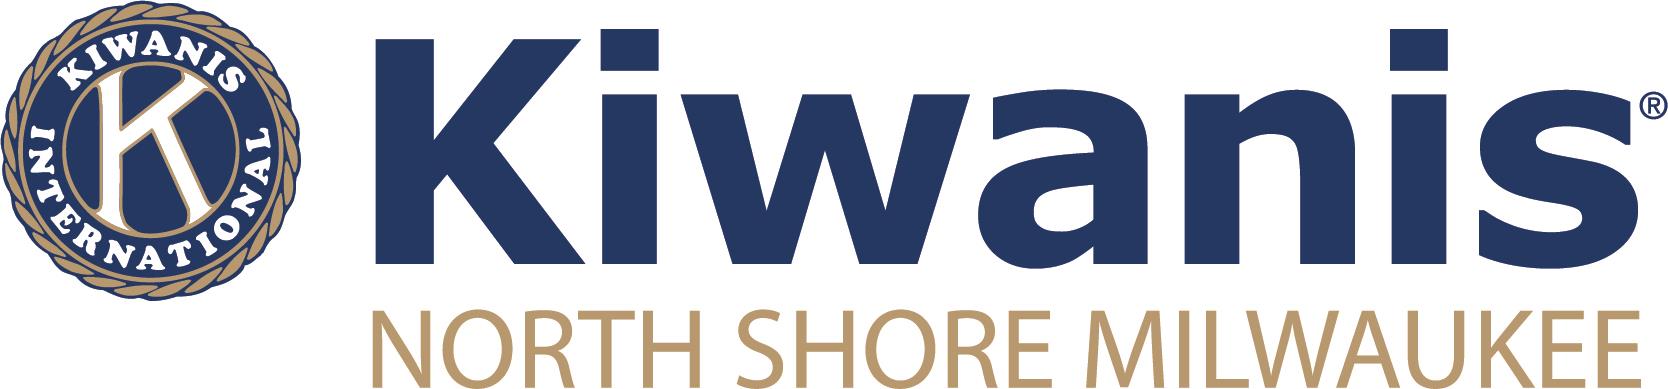 Kiwanis North Shore Milwaukee logo